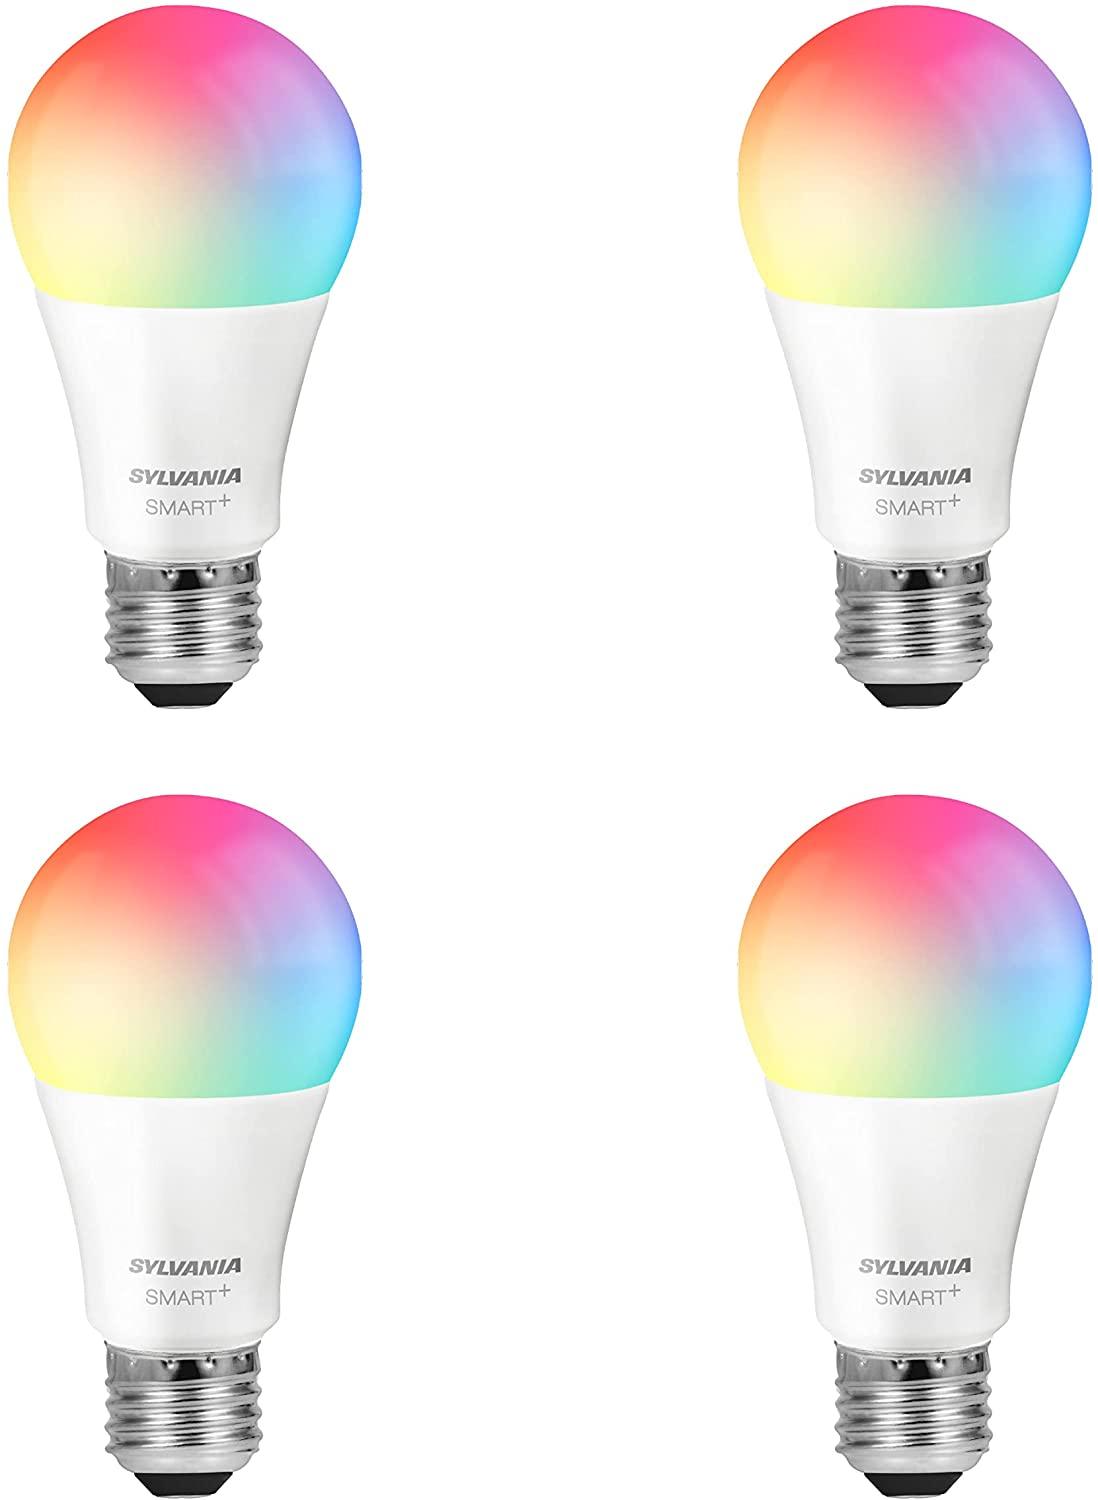 Sylvania A19 Smart+ Full Color review: A sensible no-hub bulb